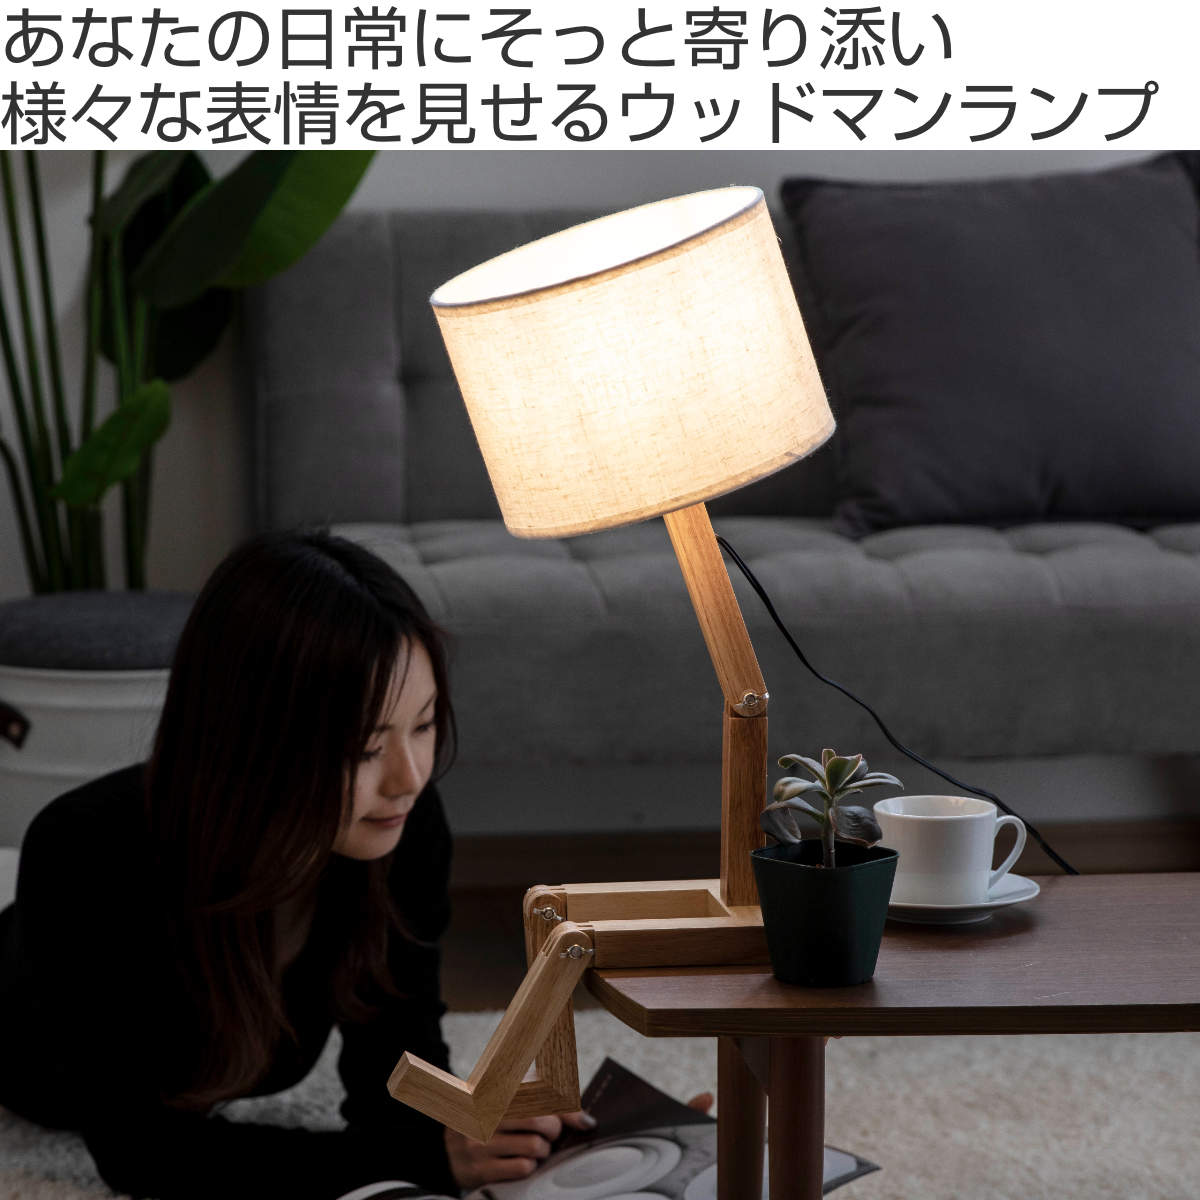 間接照明 おしゃれ LED 月 寝室 テーブルランプ インテリアライト ライト 調光 ベッドサイドランプ 月のランプ リビング 北欧 Mサイズ